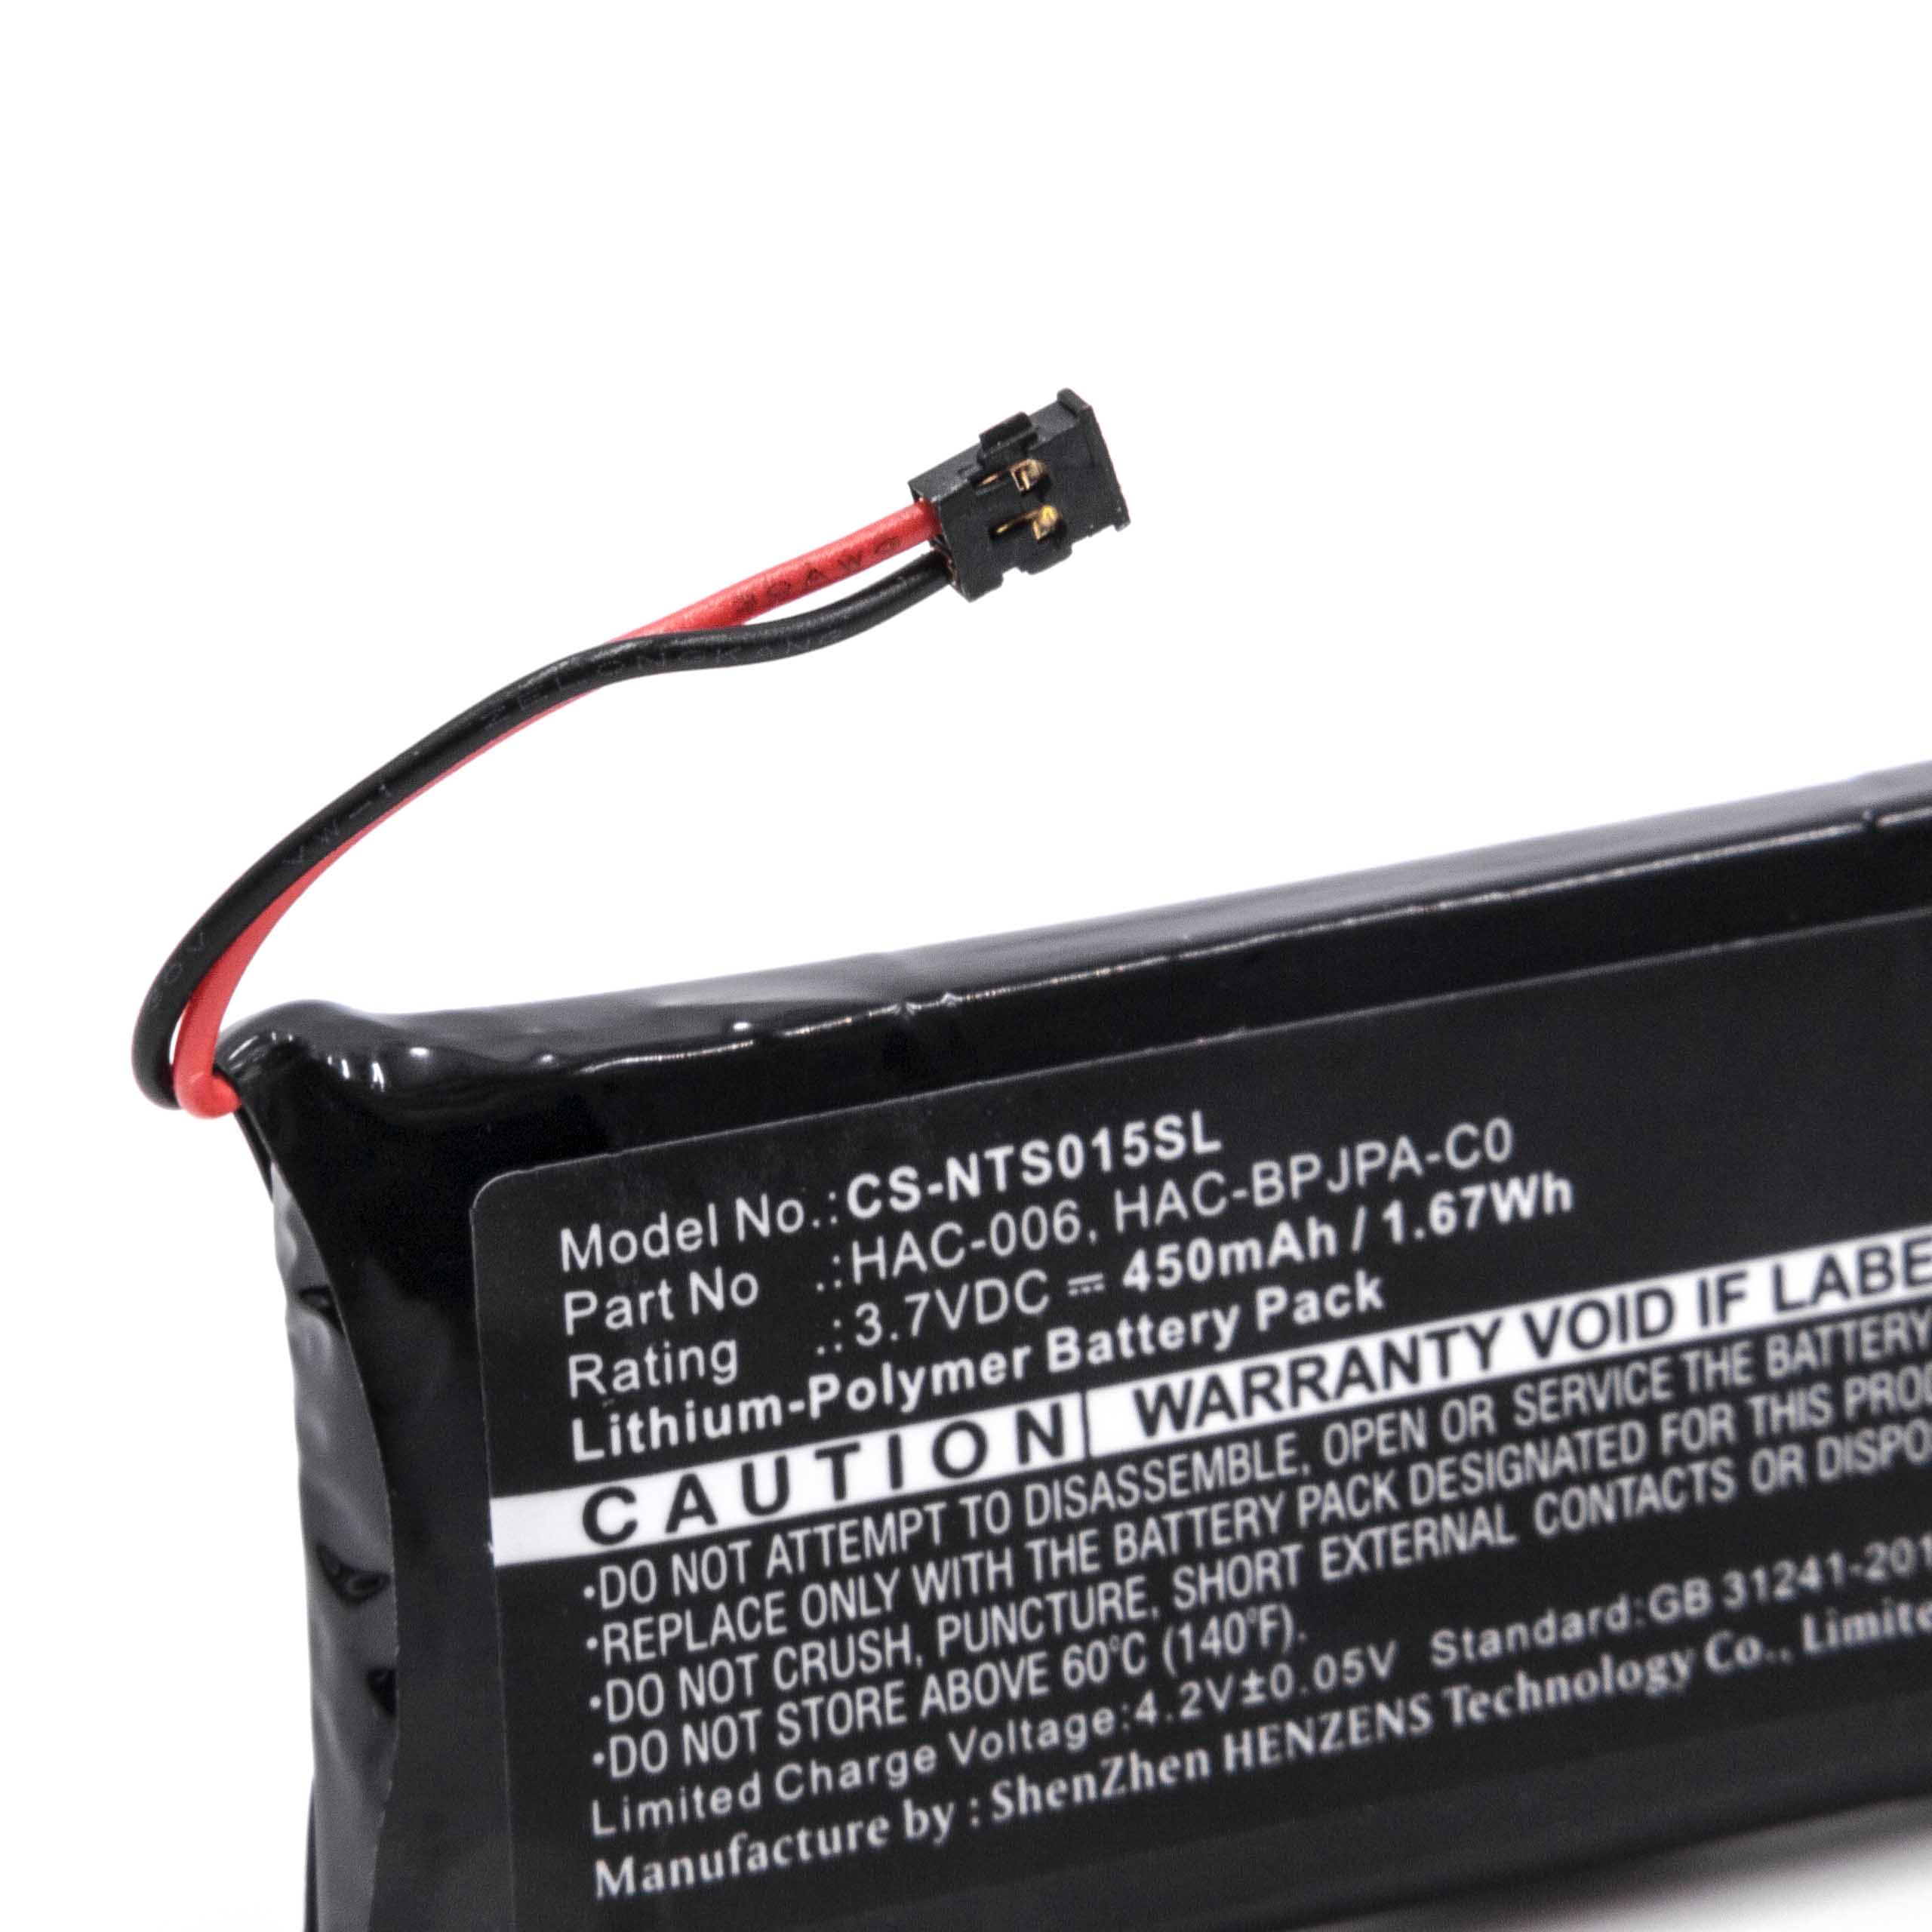 Batterie remplace Nintendo HAC-006 remplace Nintendo HAC-006 pour manette de jeu - 450mAh, 3,7V